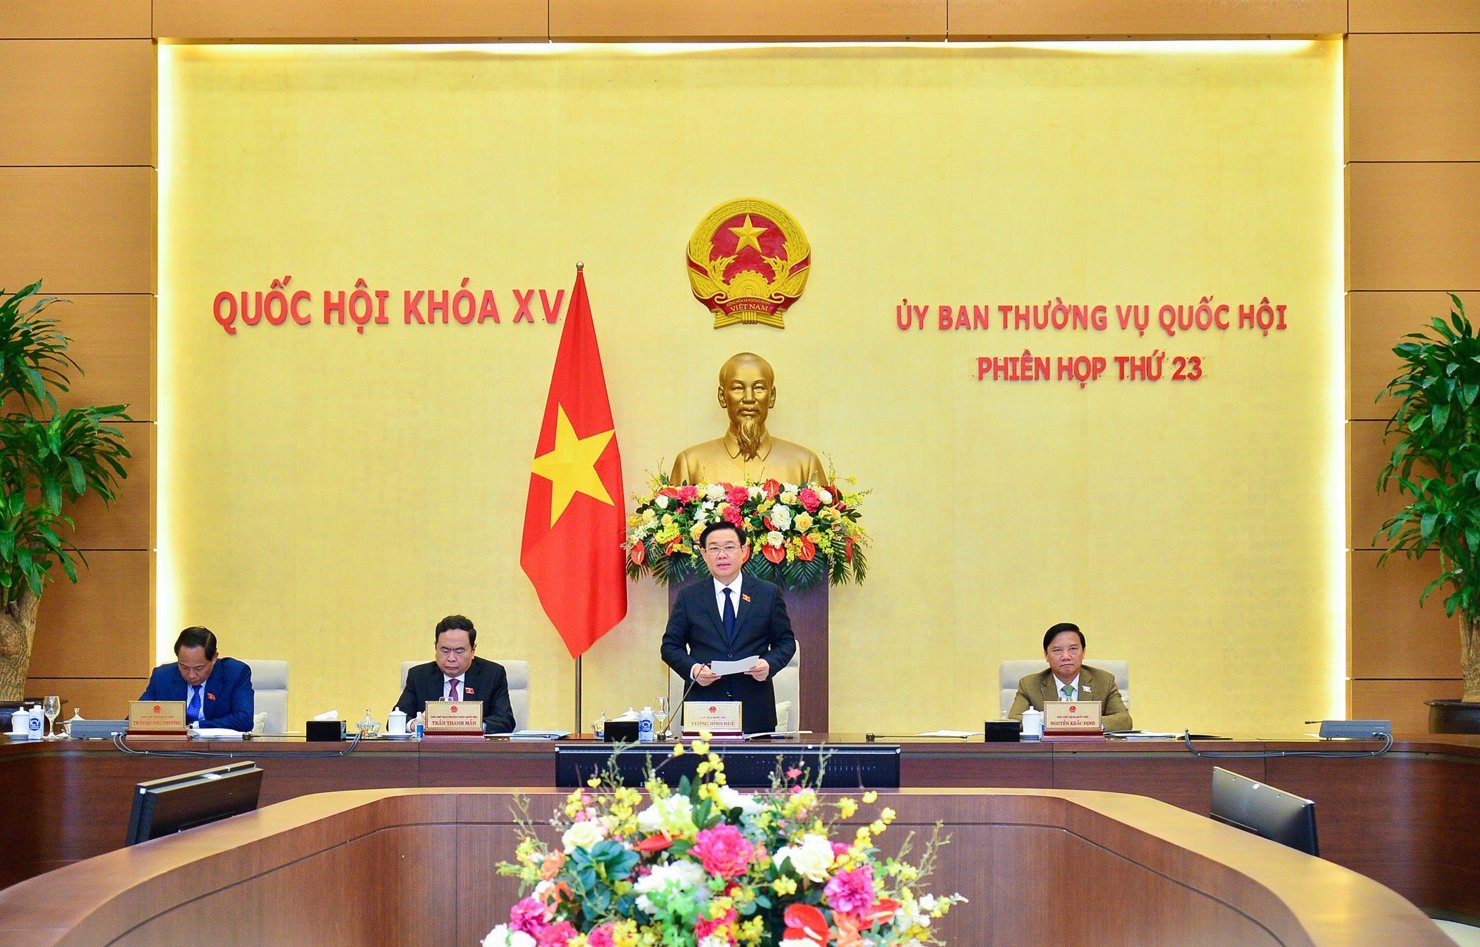 Chủ tịch Quốc hội Vương Đình Huệ phát biểu khai mạc Phiên họp thường kỳ lần thứ 23 của Ủy ban Thường vụ Quốc hội.